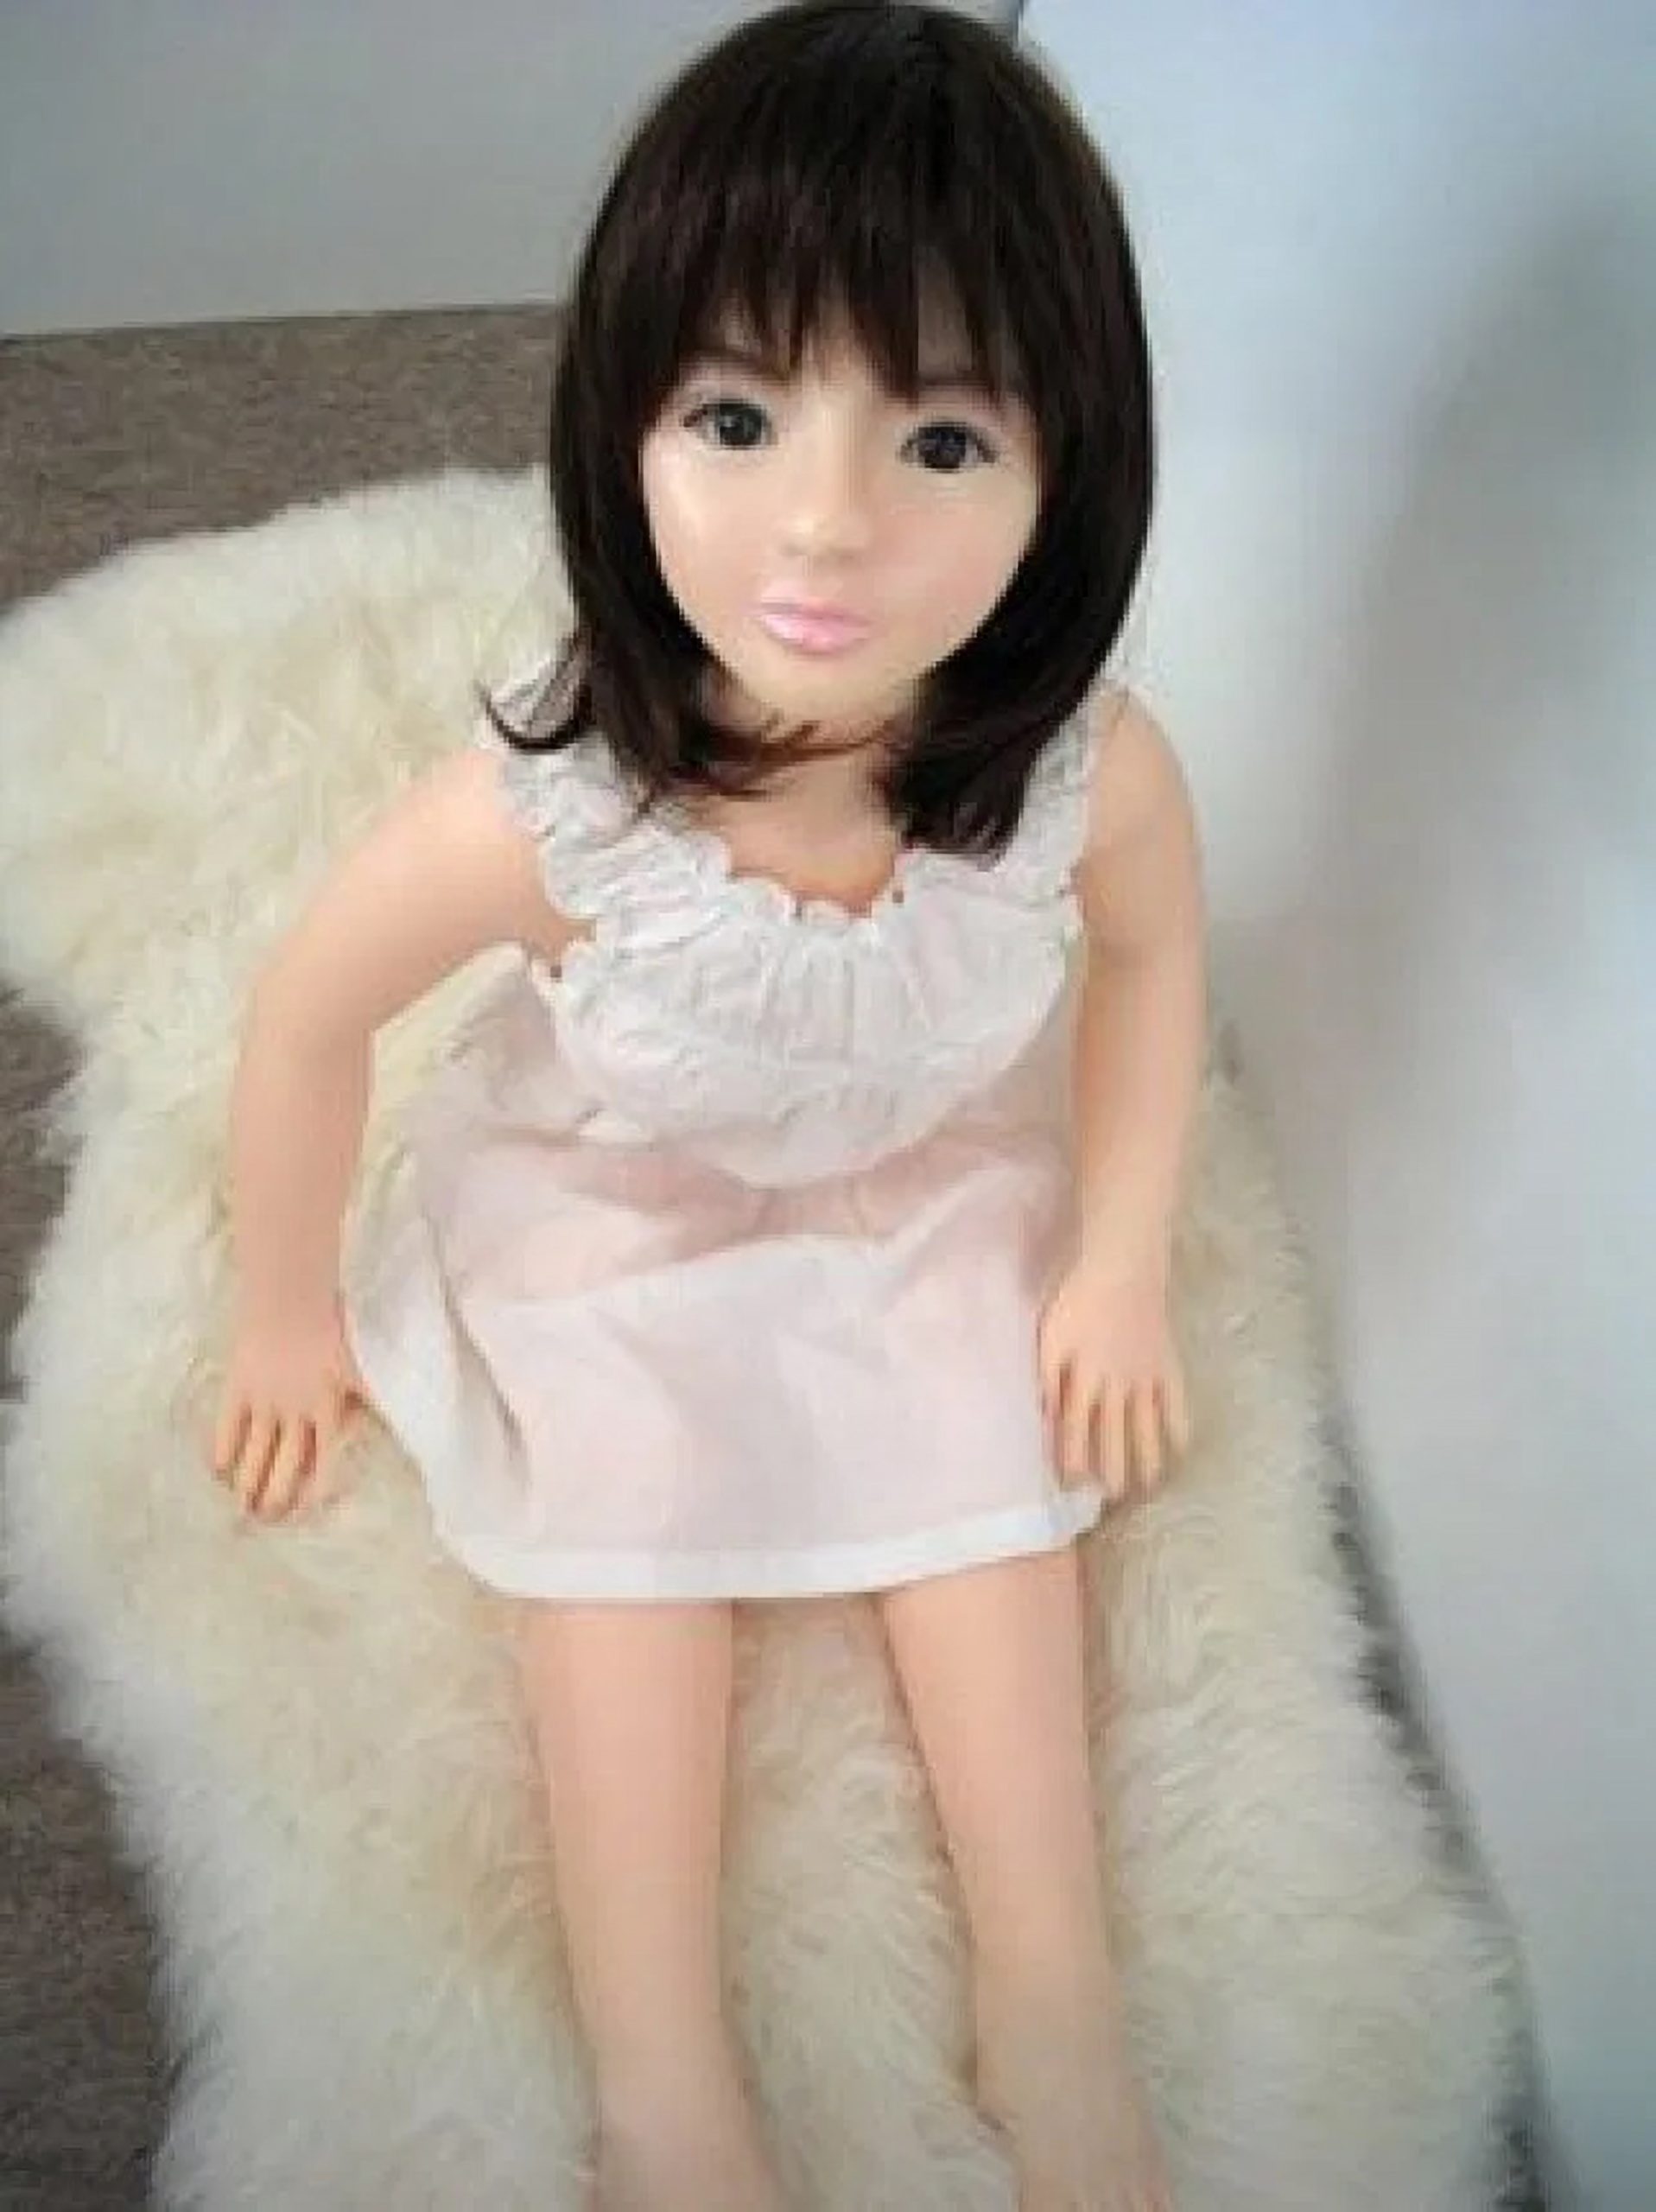 homemade sex dolls girl